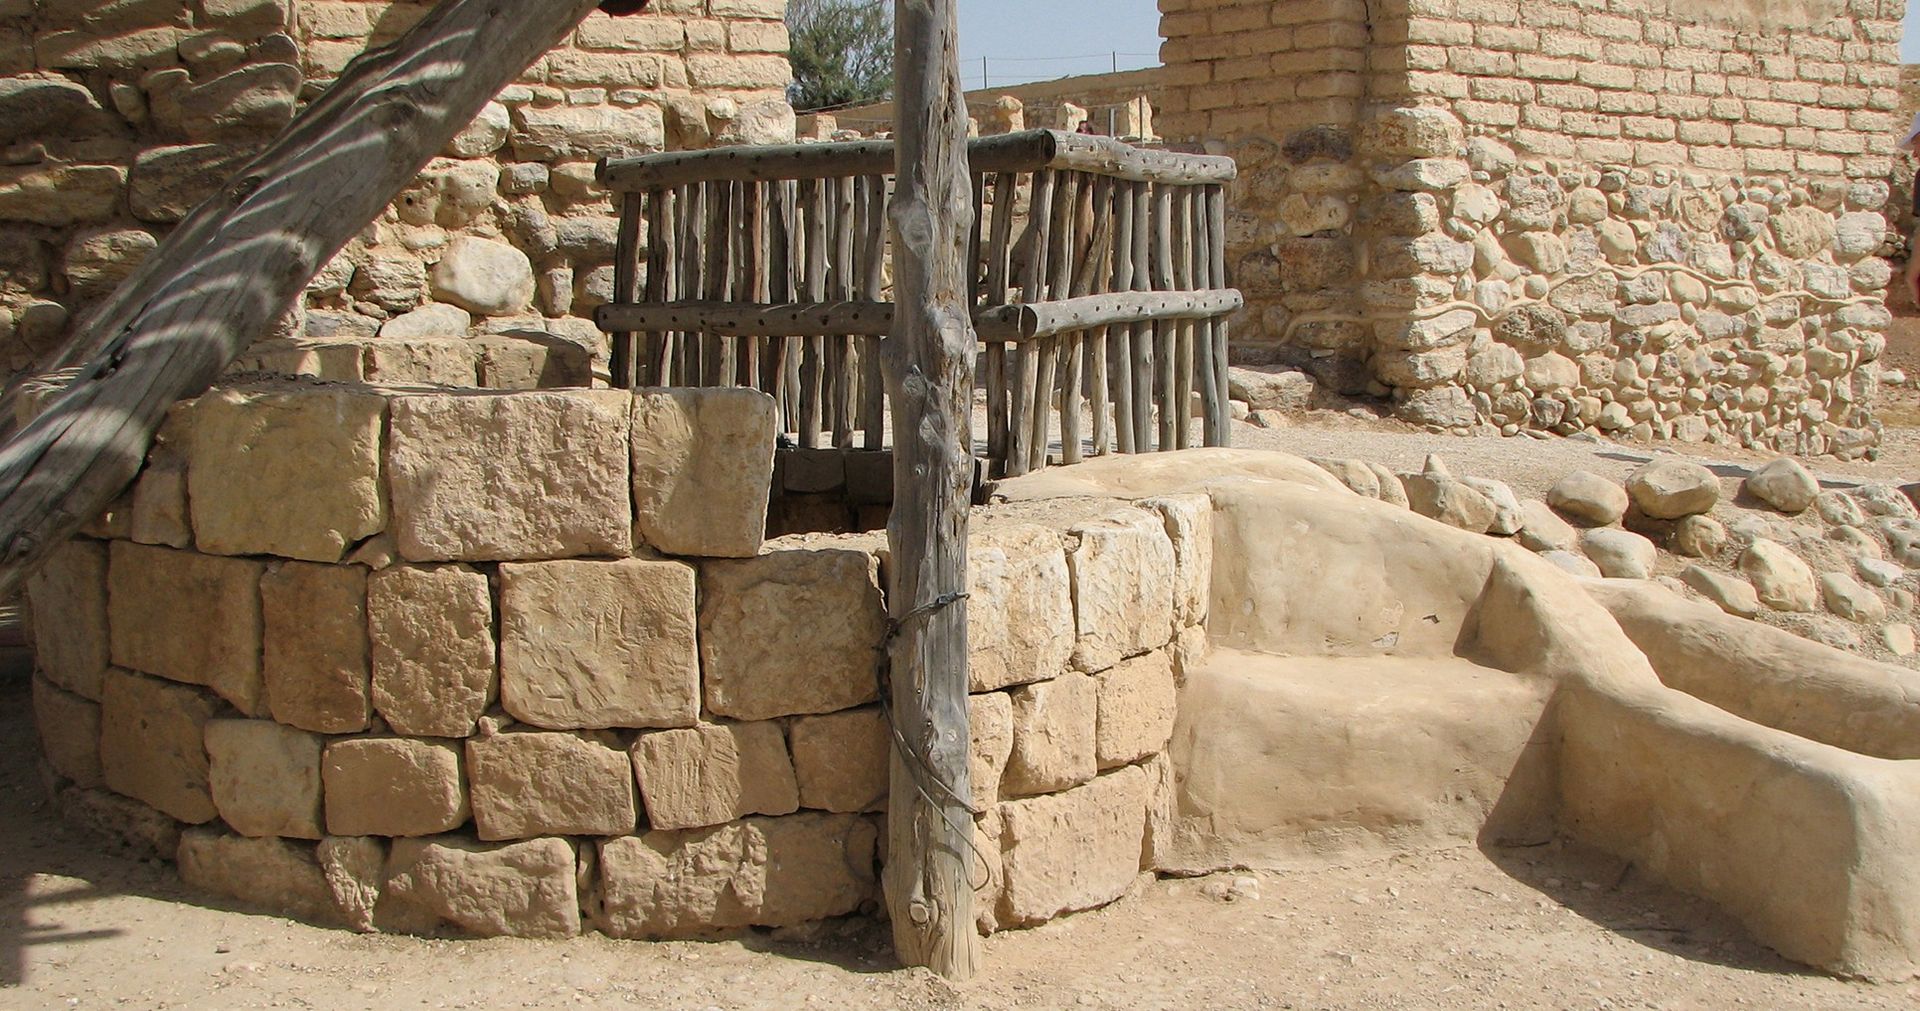 Jacob's well in Beersheba in 2013 (see Genesis 21:31).